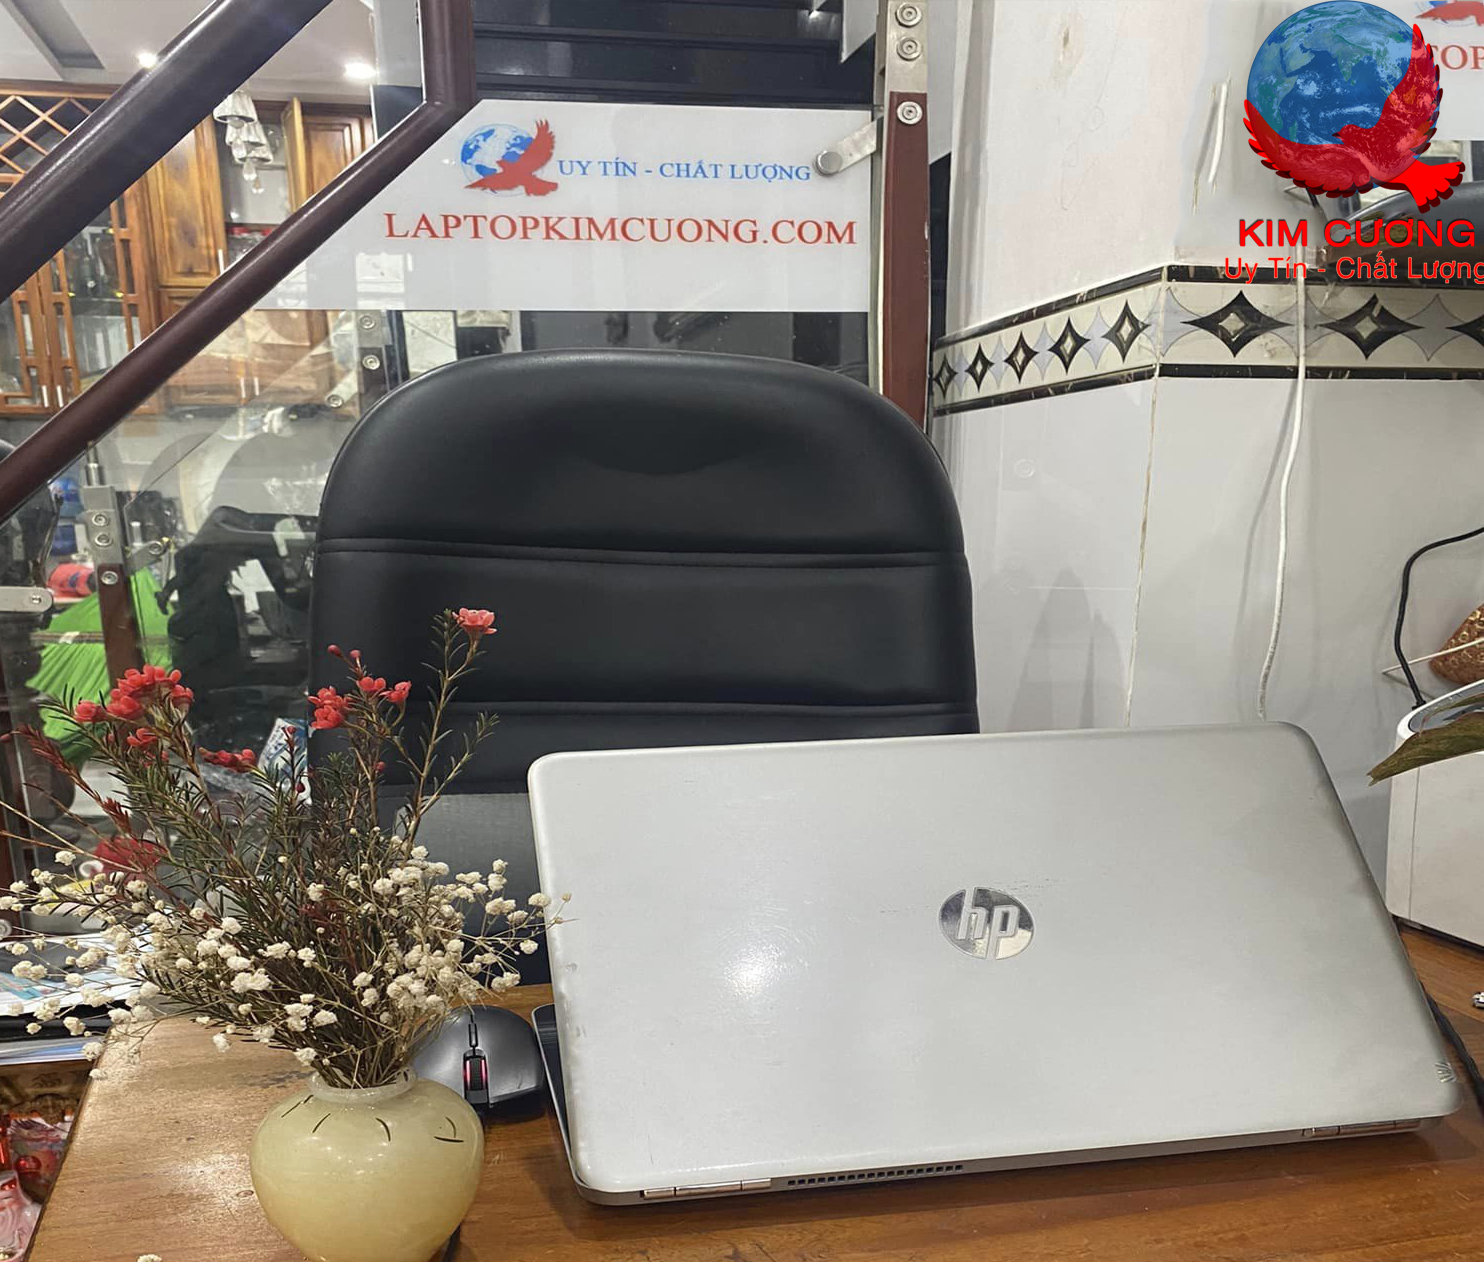 Laptop Kim Cương